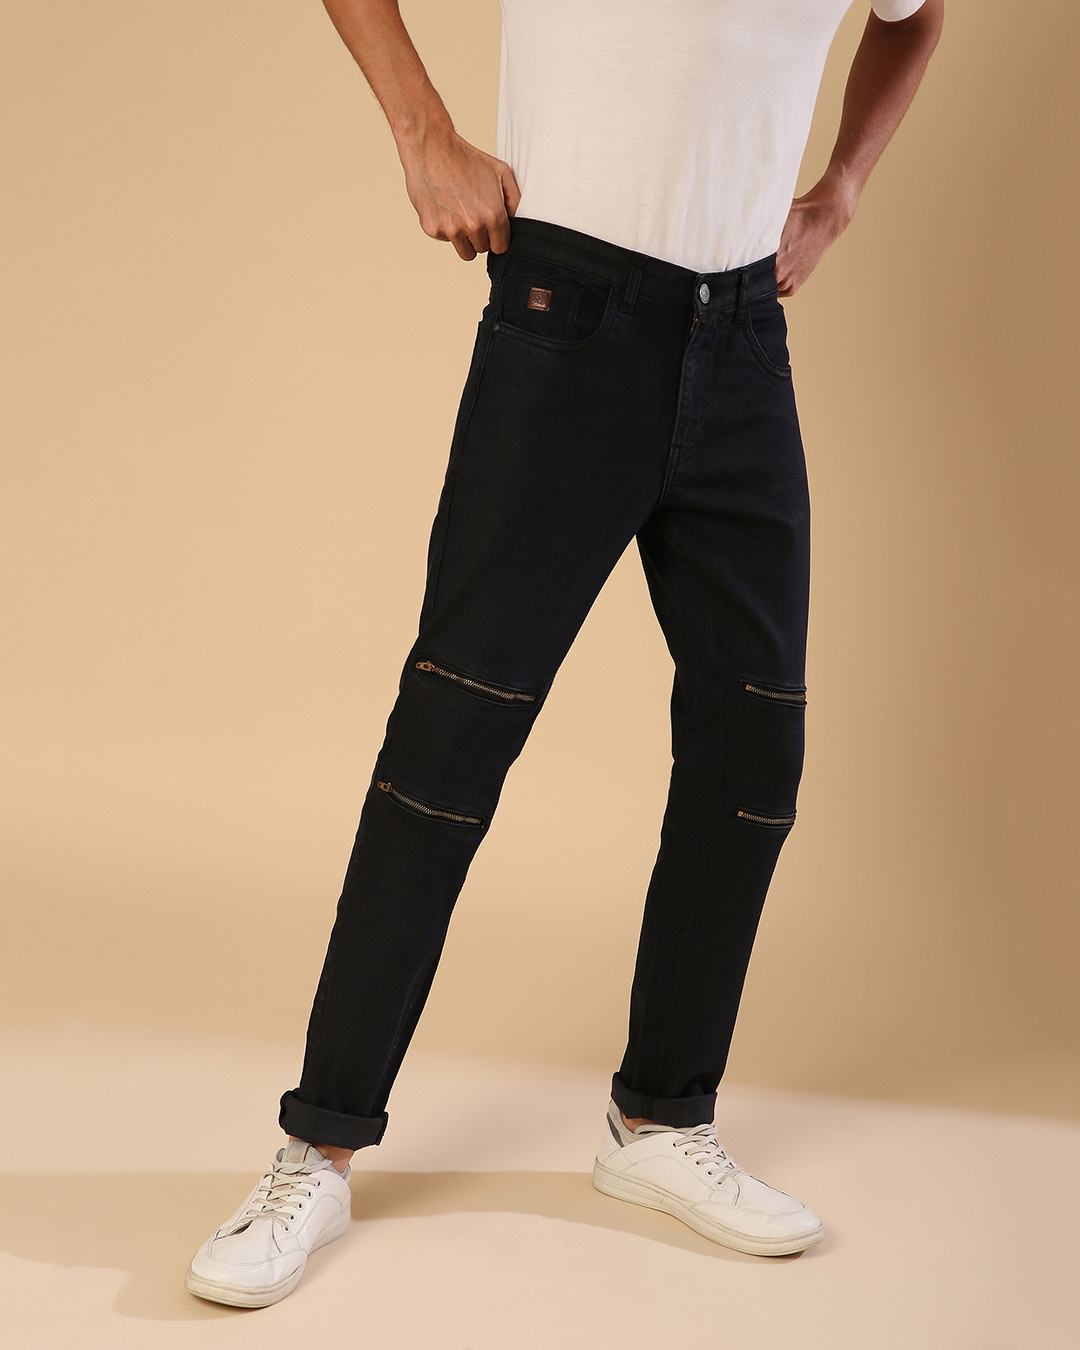 Buy Campus Sutra Men's Black Regular Fit Jeans for Men Black Online at ...